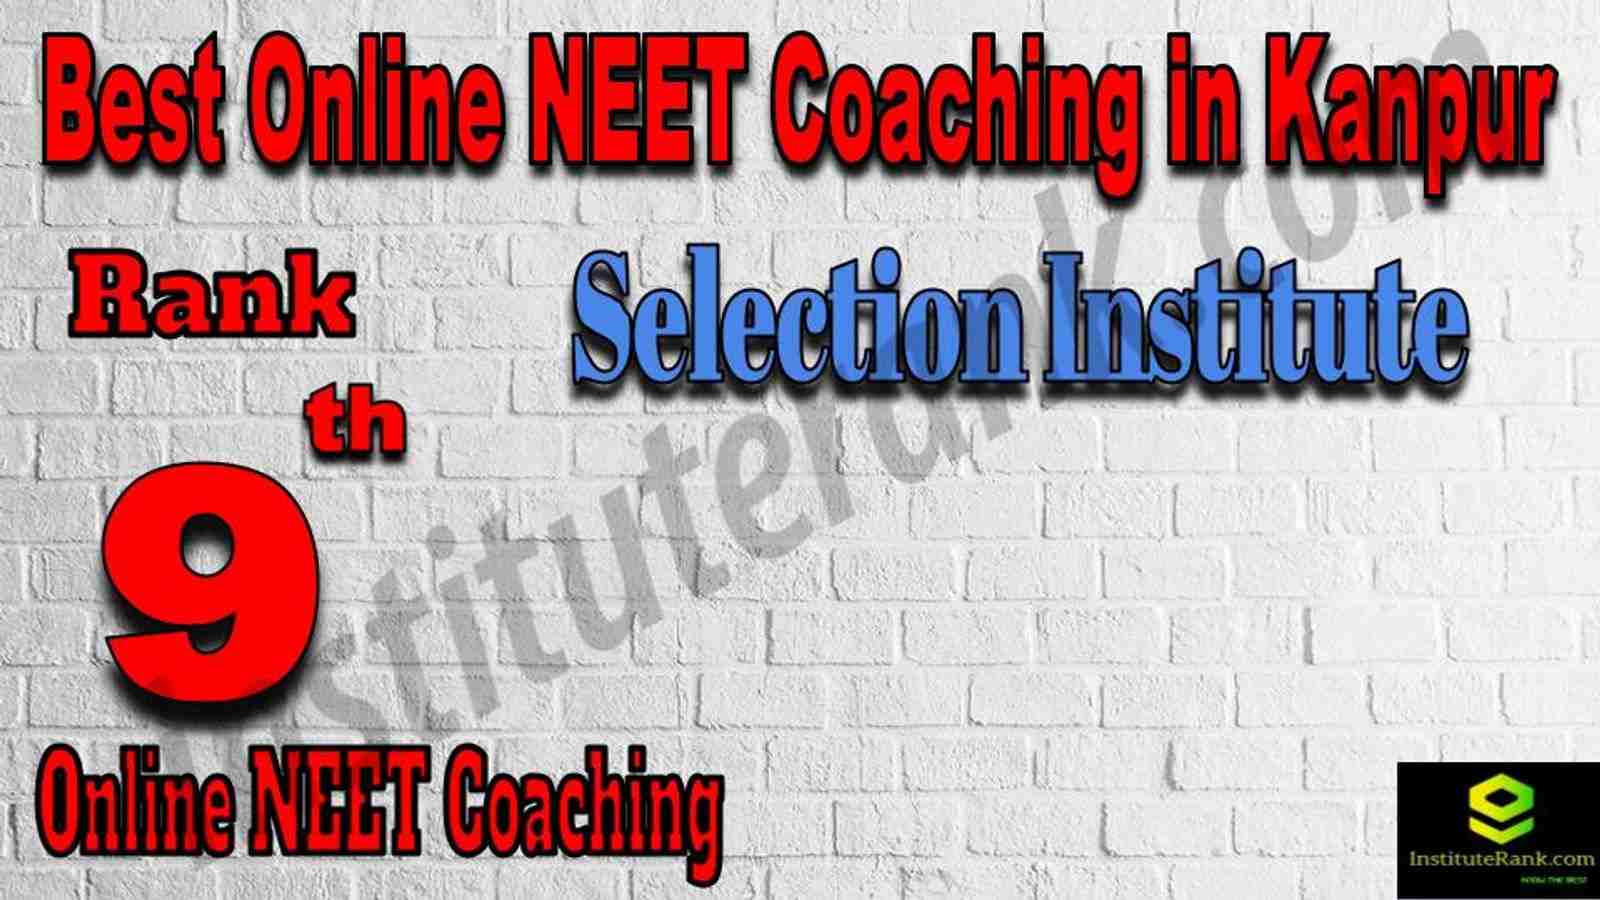 Rank 9 Best Online NEET Coaching in Kanpur